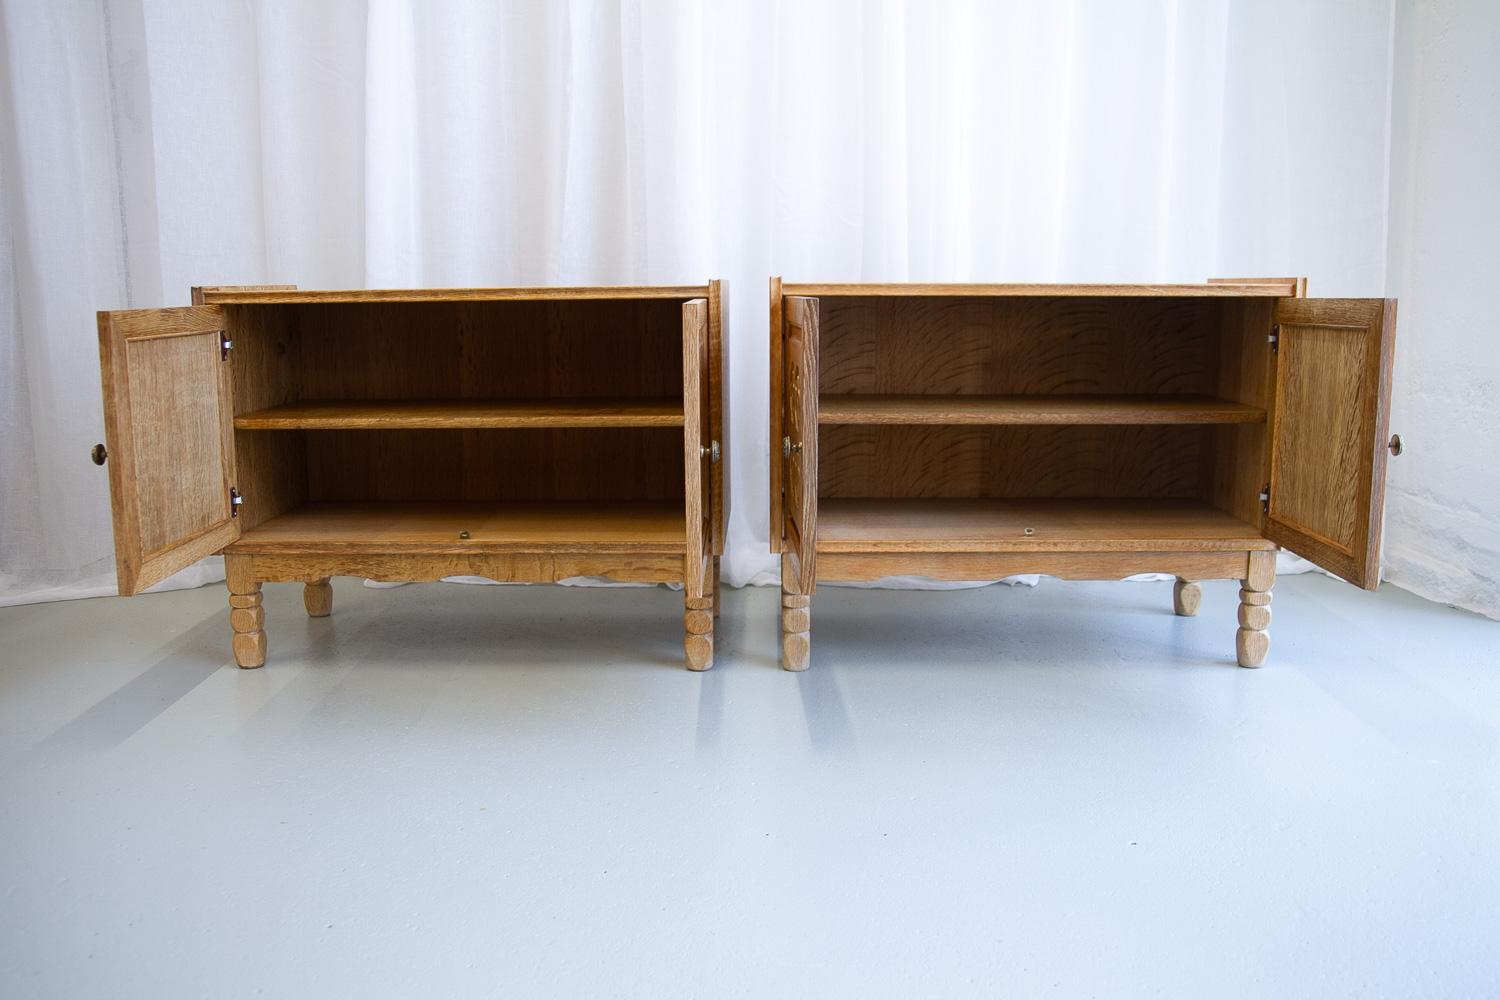 Mid-20th Century Danish Modern Oak Cabinets by Kjærnulf, 1960s. Set of 2.